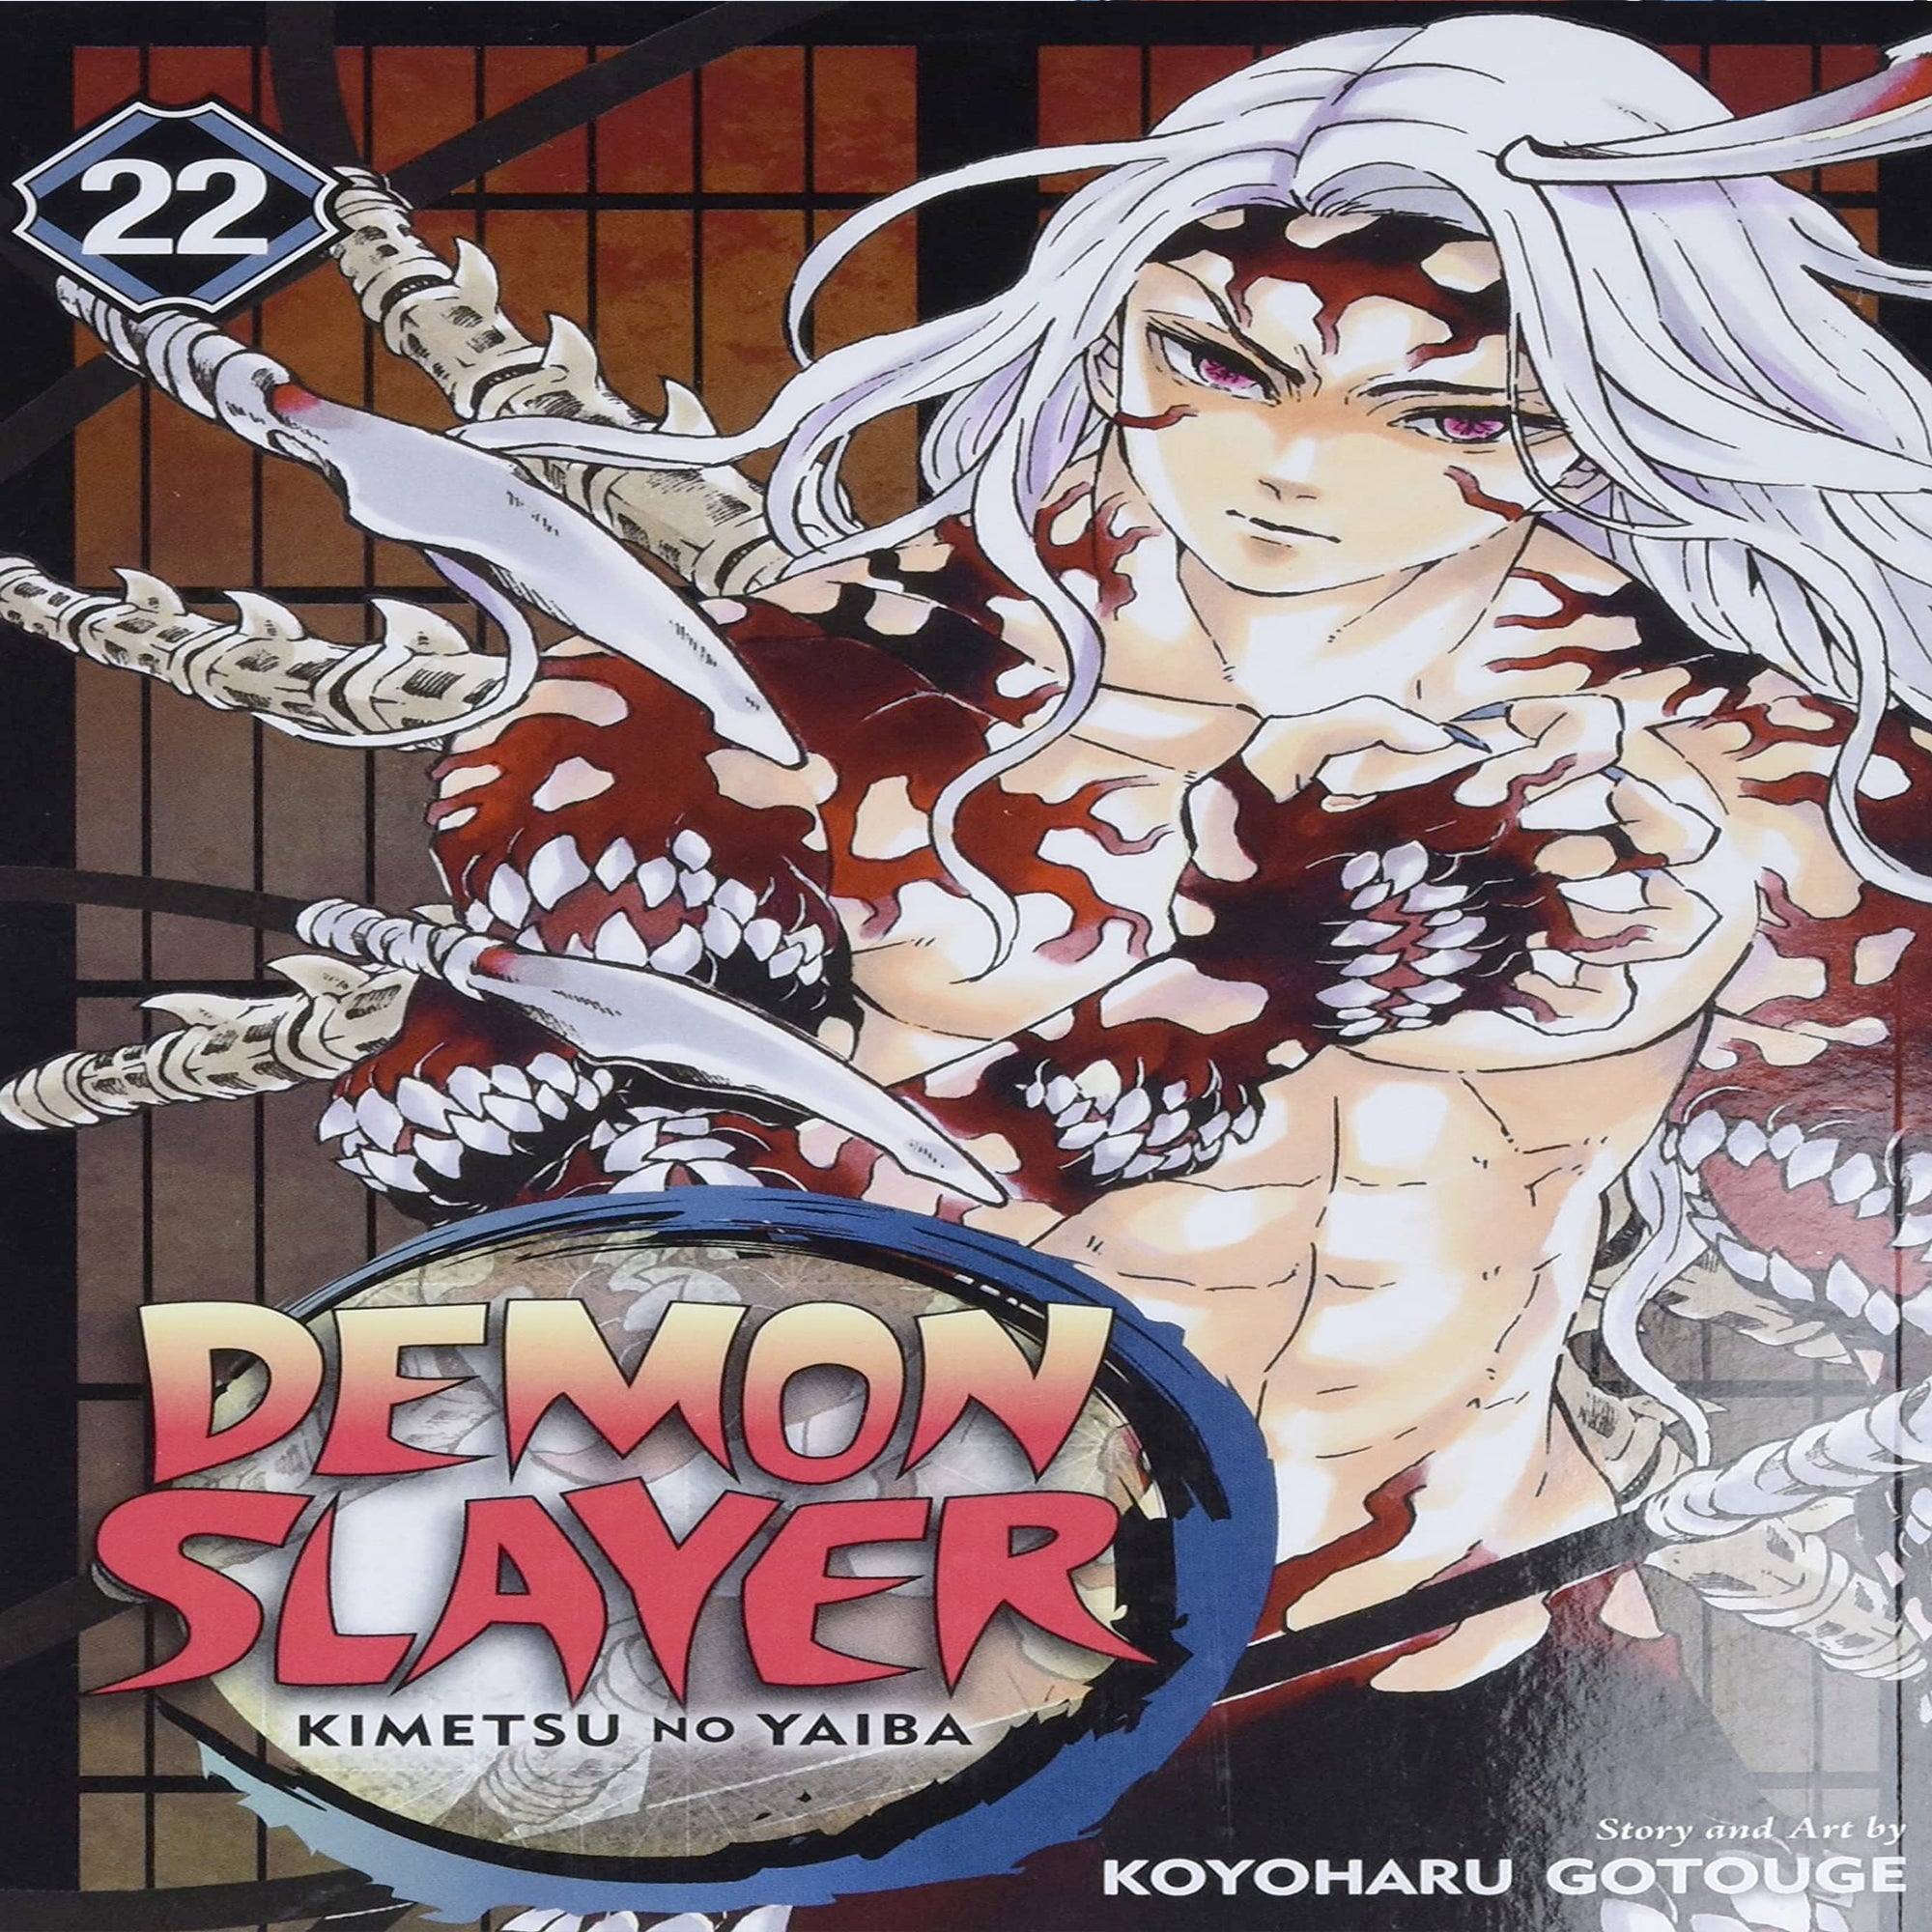 Demon Slayer: Kimetsu No Yaiba, Vol. 22: Volume 22